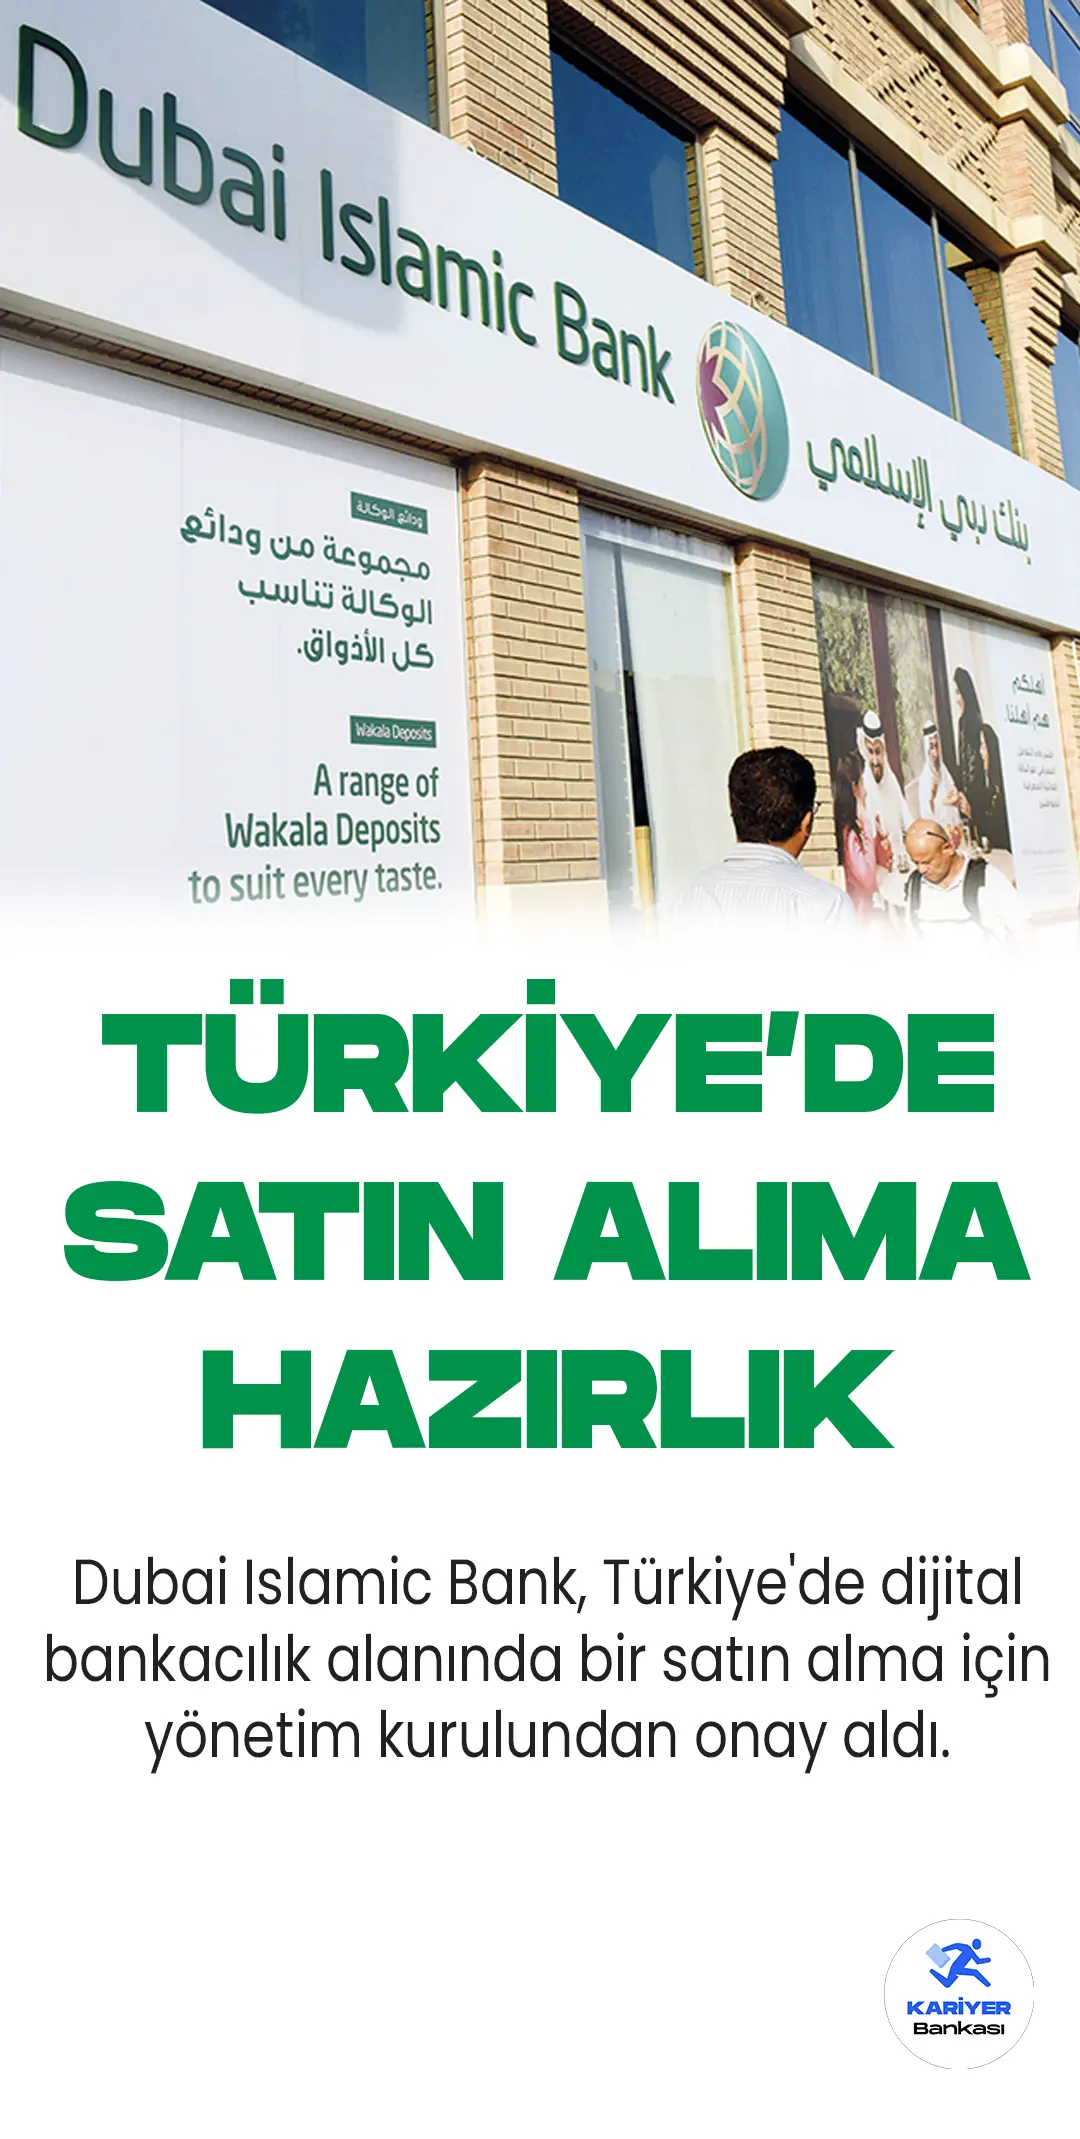 Dubai İslami Bank Türkiye'de satın alıma hazırlanıyor.